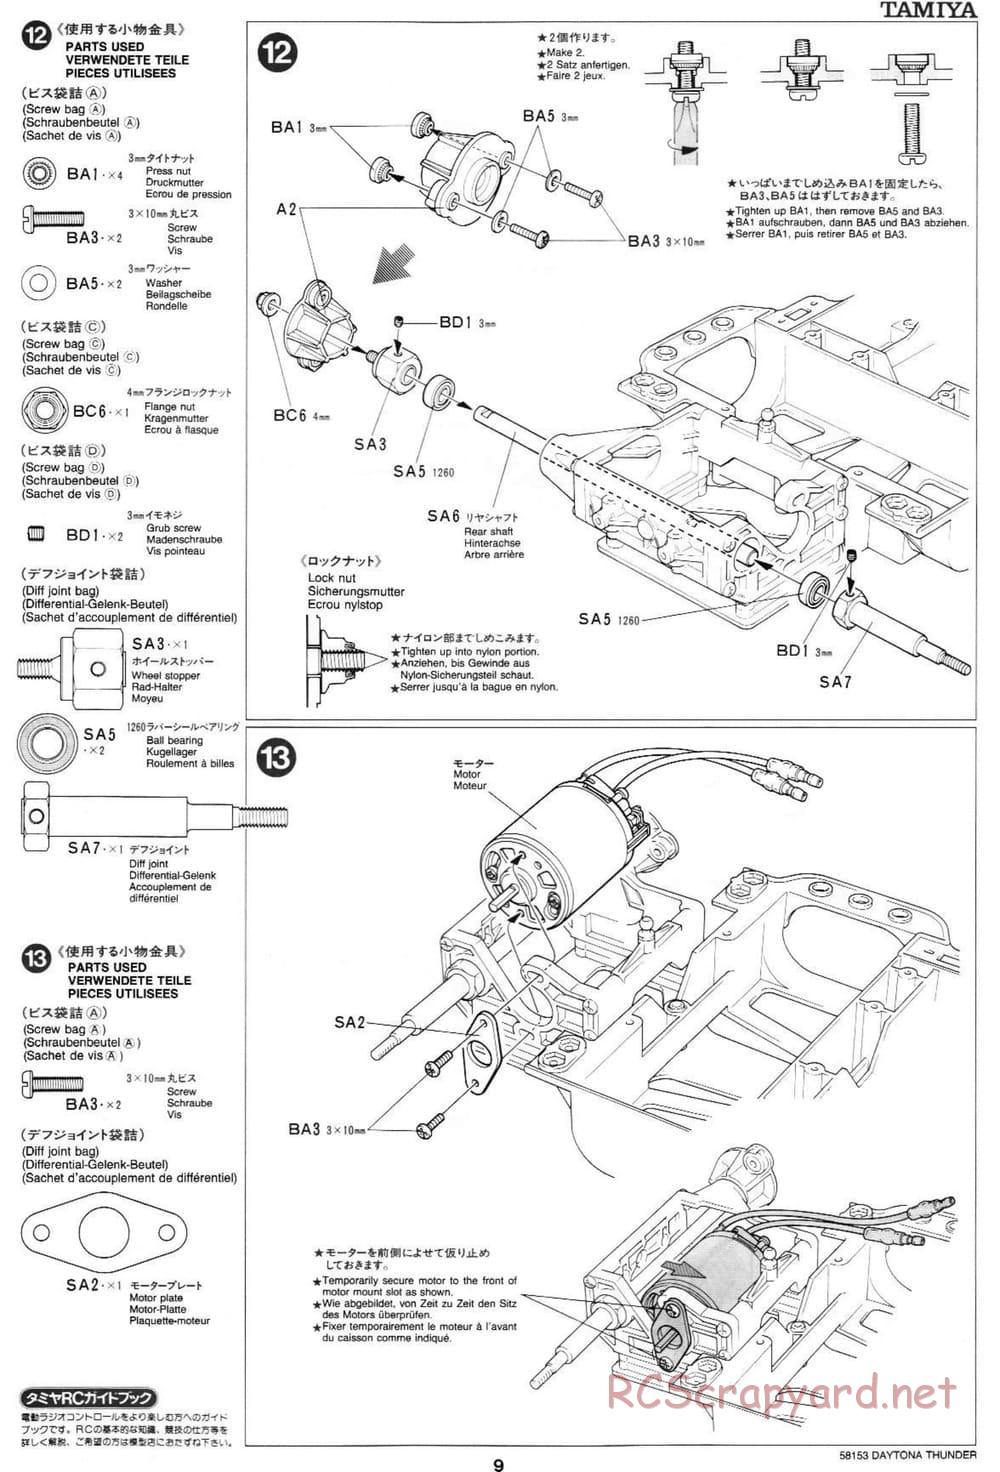 Tamiya - Daytona Thunder - Group-C Chassis - Manual - Page 9